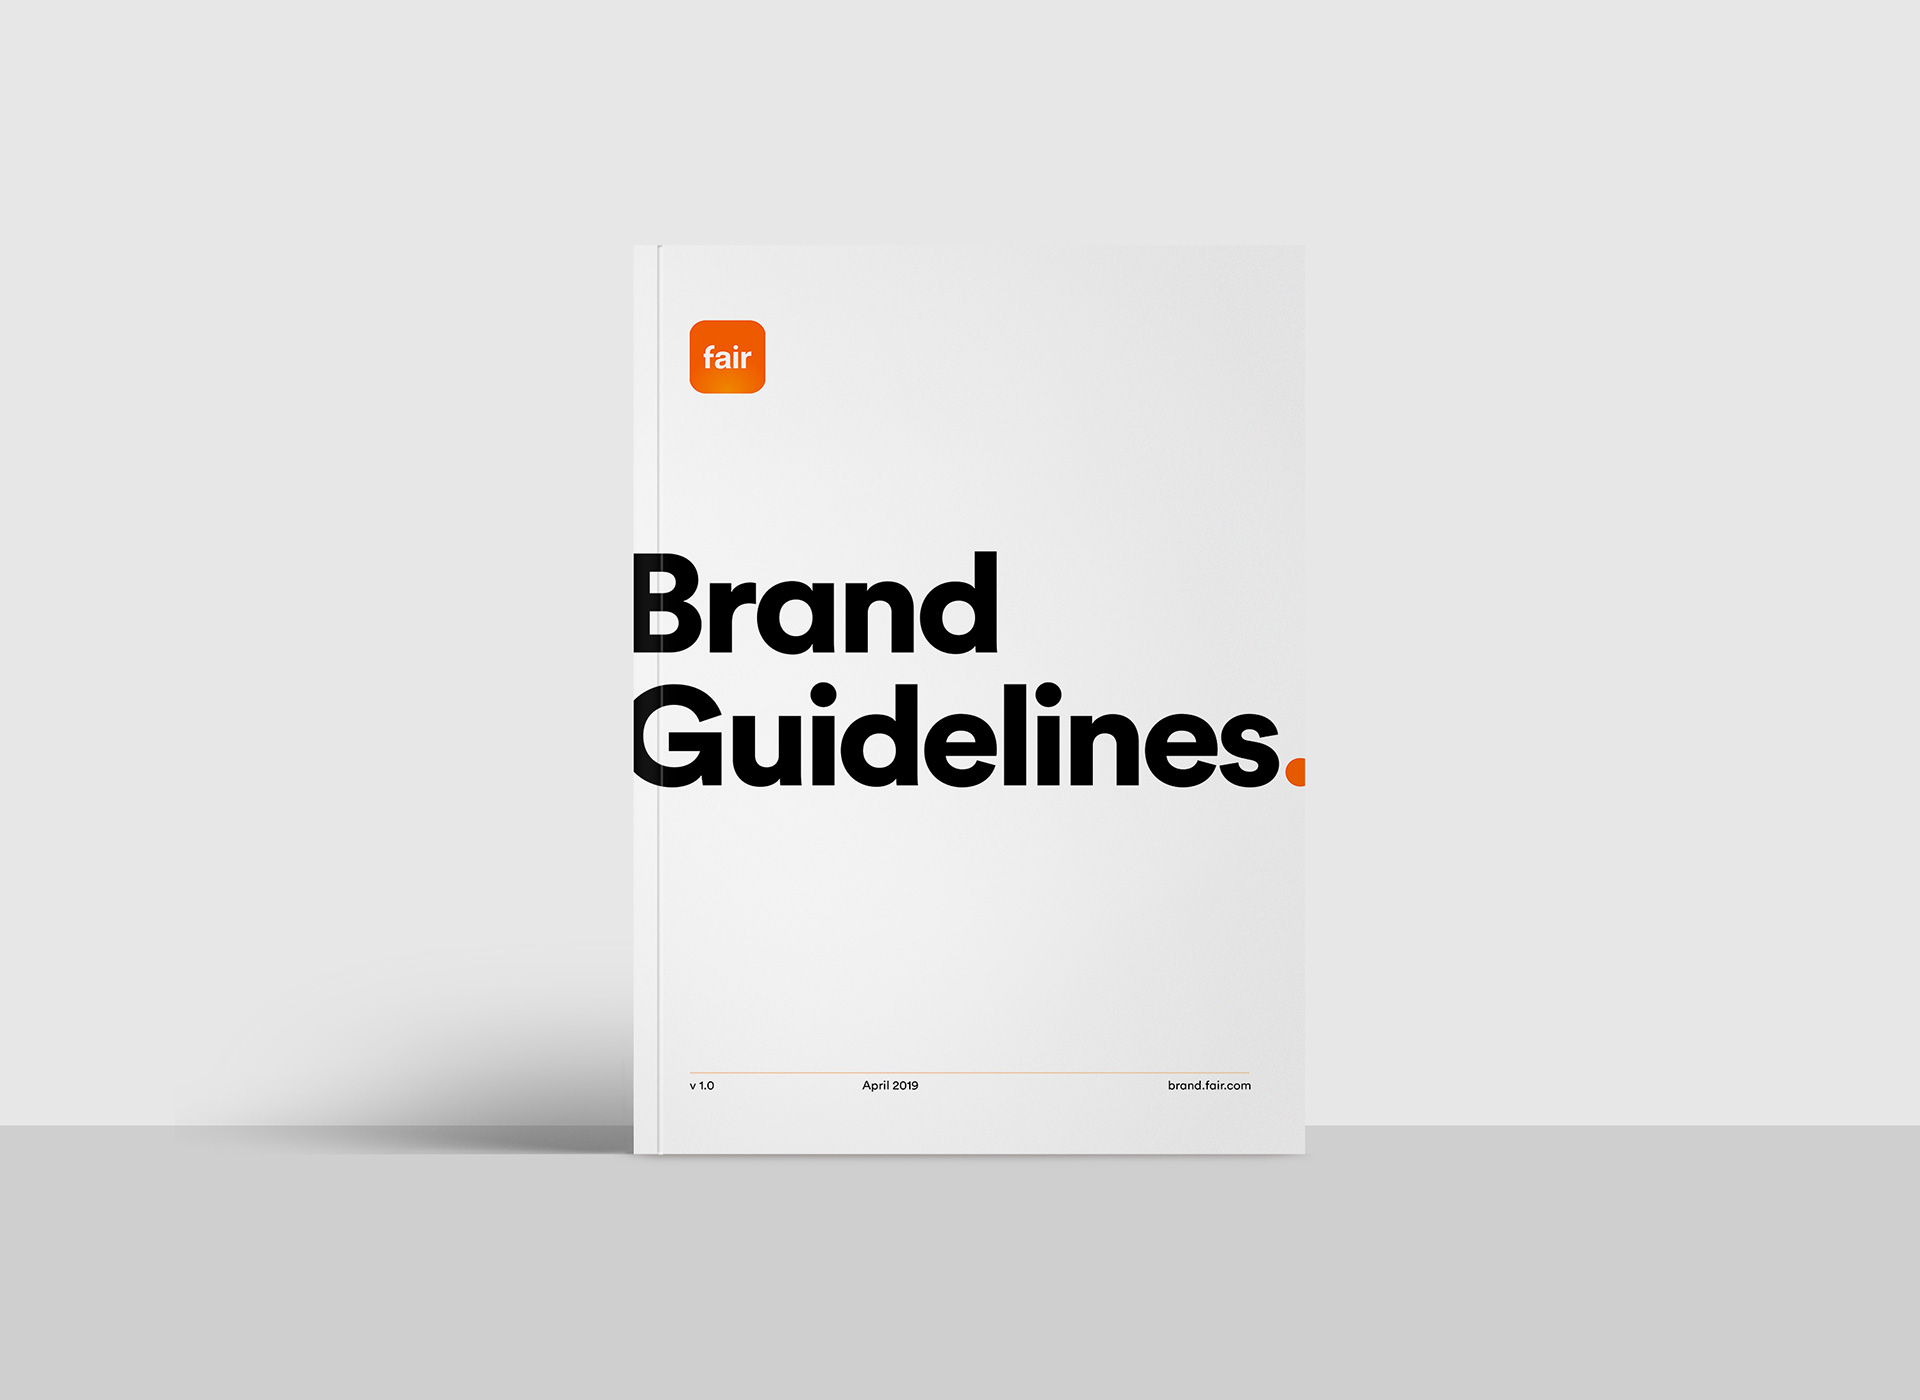 Arron Bleasdale - Fair Brand Guidelines